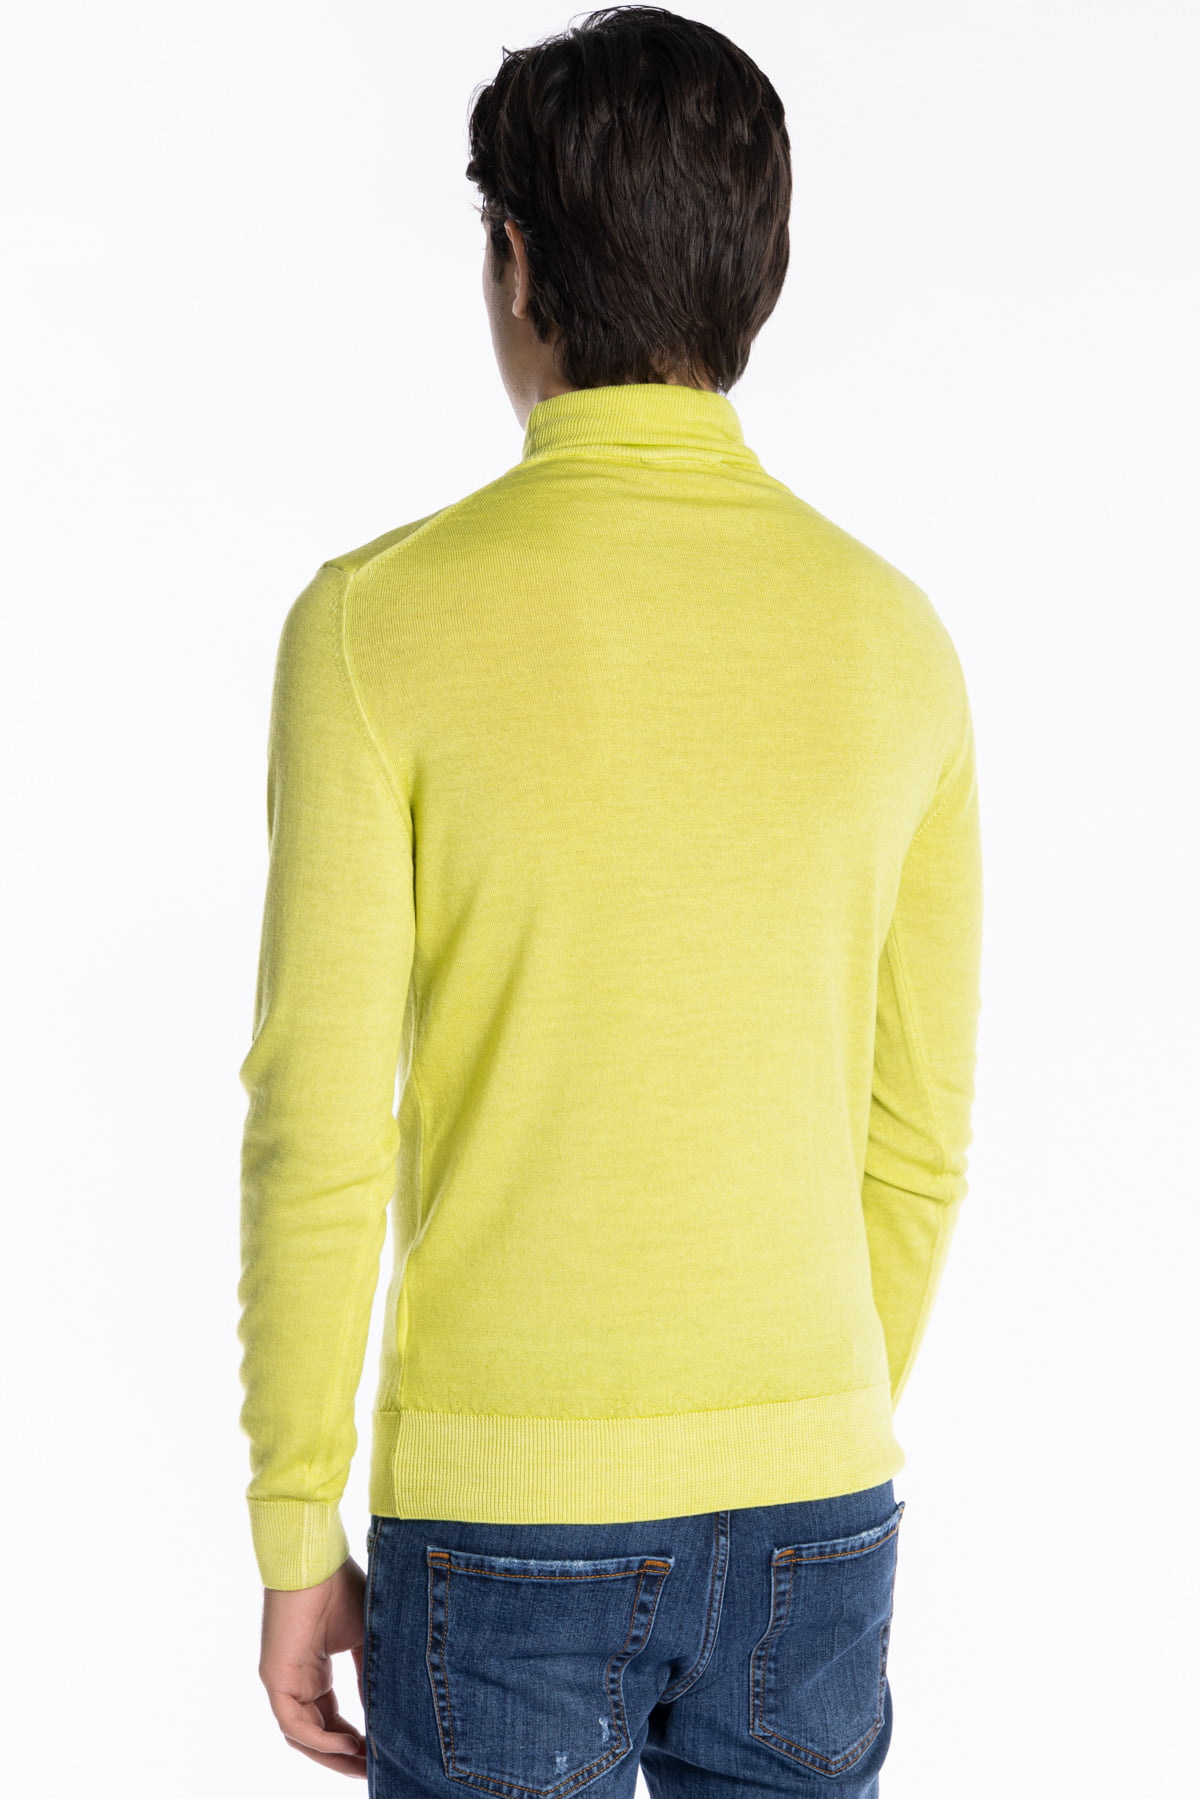 Maglione da uomo collo alto giallo lime lana merinos effetto stone wash maniche lunghe